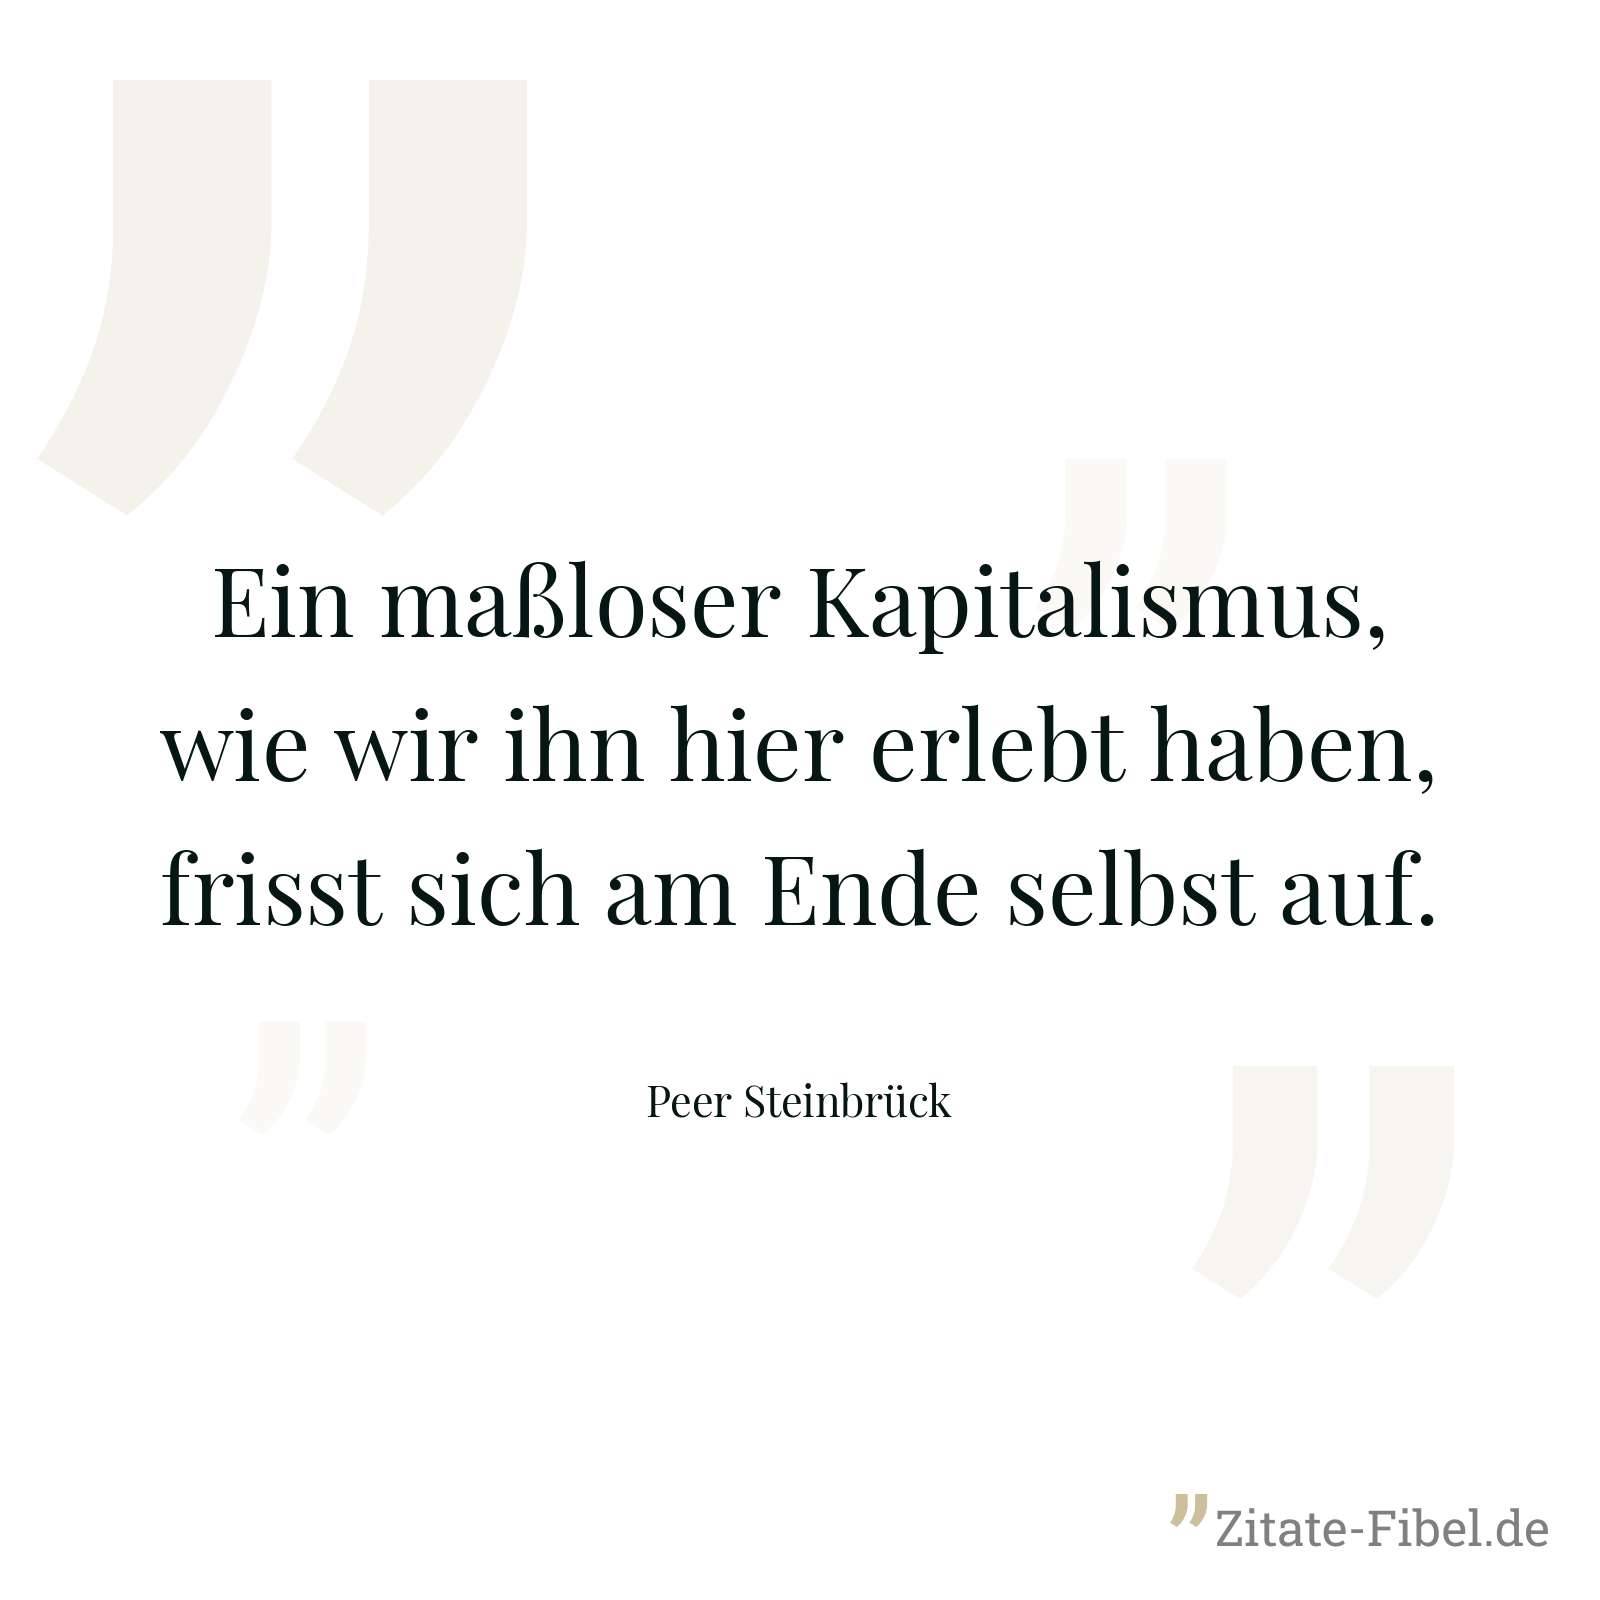 Ein maßloser Kapitalismus, wie wir ihn hier erlebt haben, frisst sich am Ende selbst auf. - Peer Steinbrück